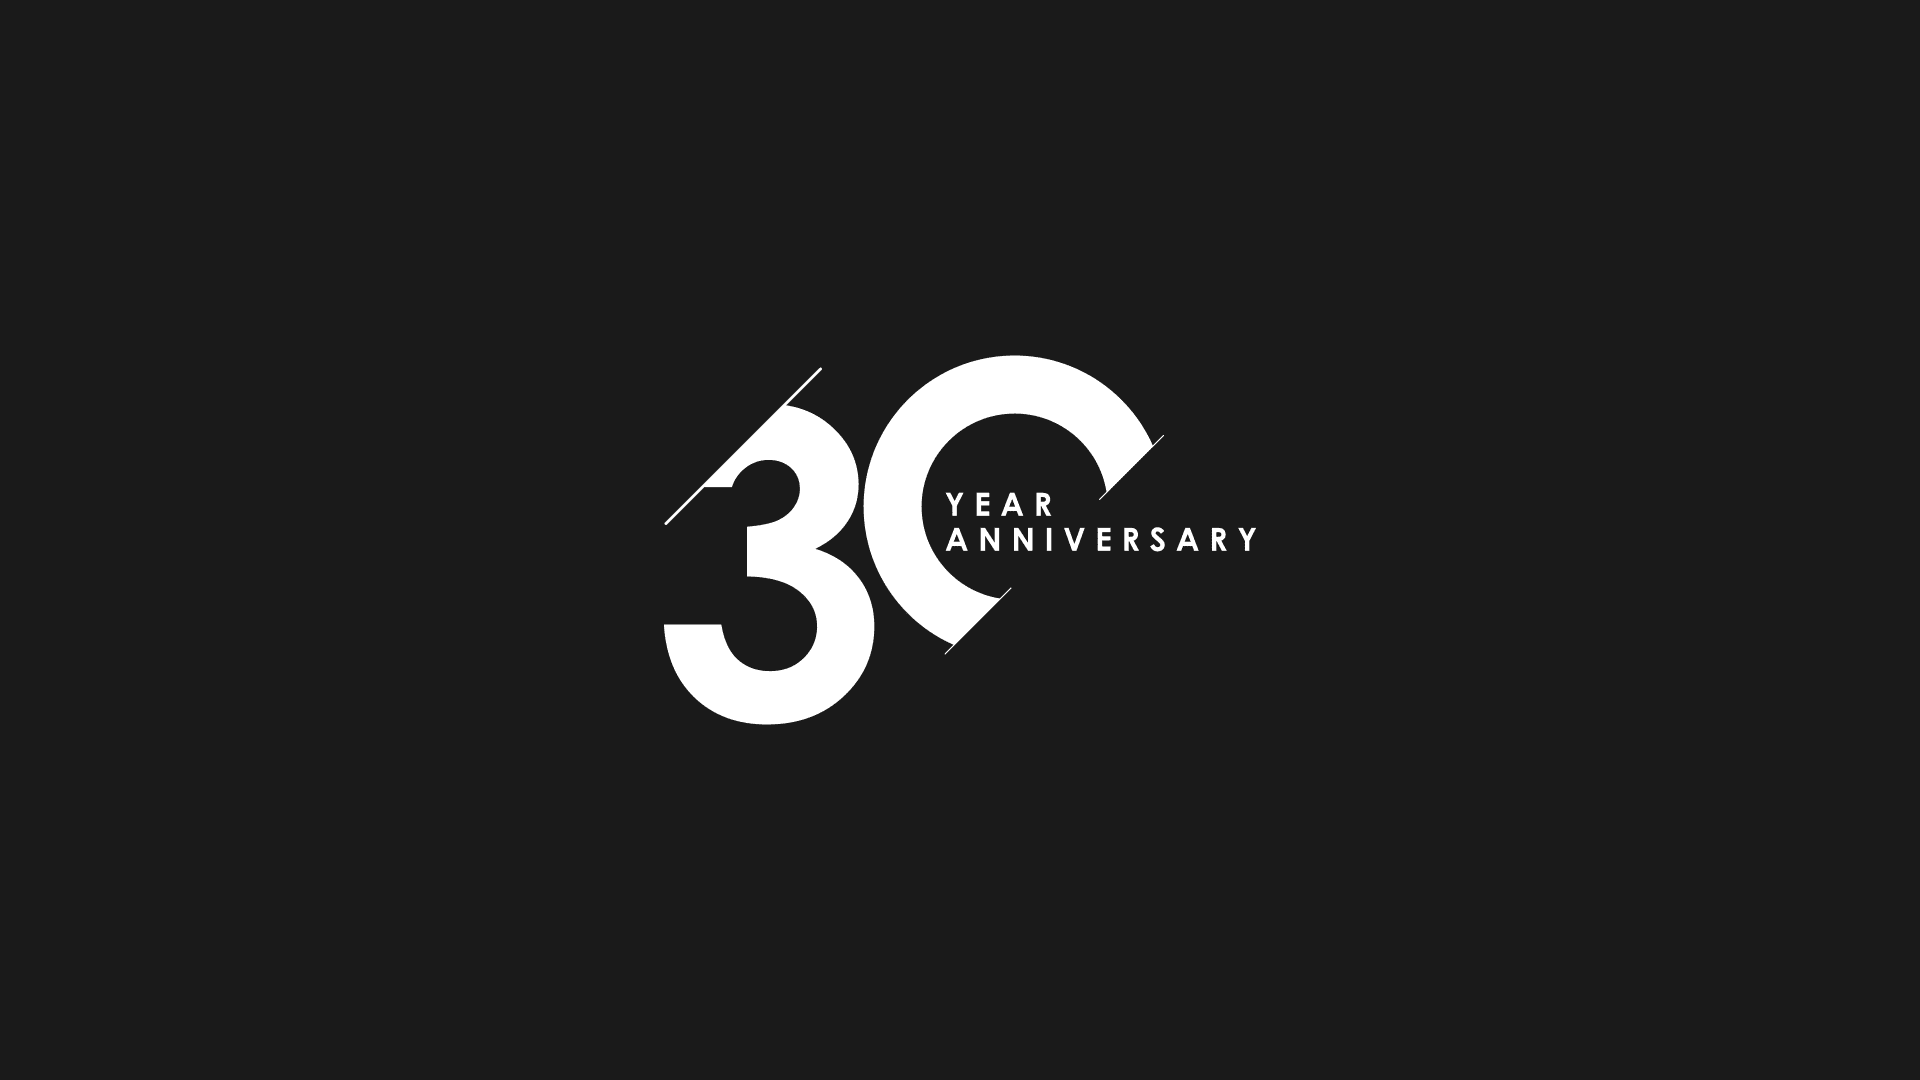 Journey's 30 Year Anniversary